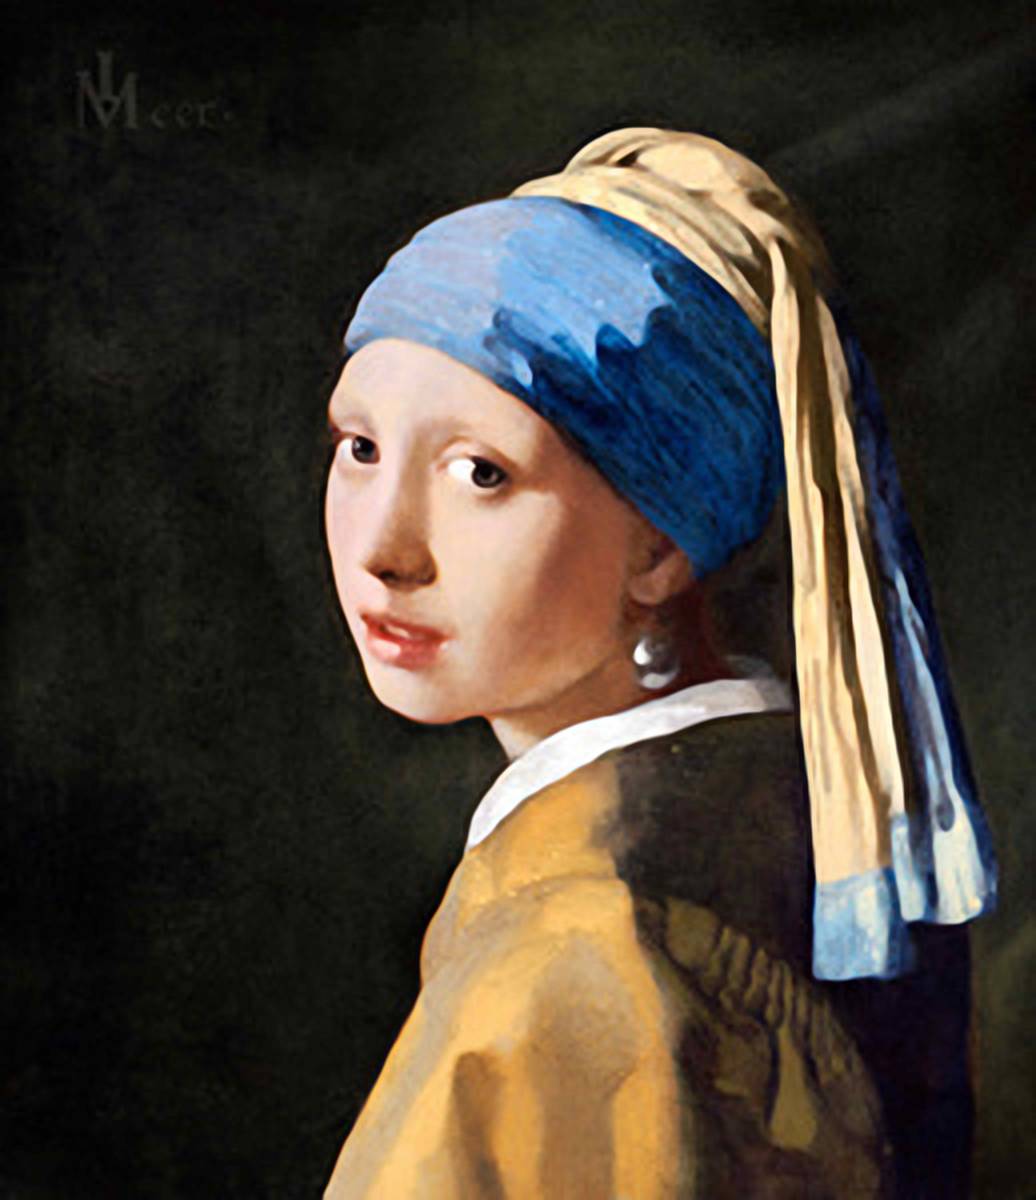 아주 새로운, 1665년 그림의 원래 색상을 재현하기 위해 특별한 기술을 사용하여 베르메르의 진주 귀걸이를 한 소녀의 고품질 프린트, L사이즈, 액자, 삽화, 그림, 다른 사람